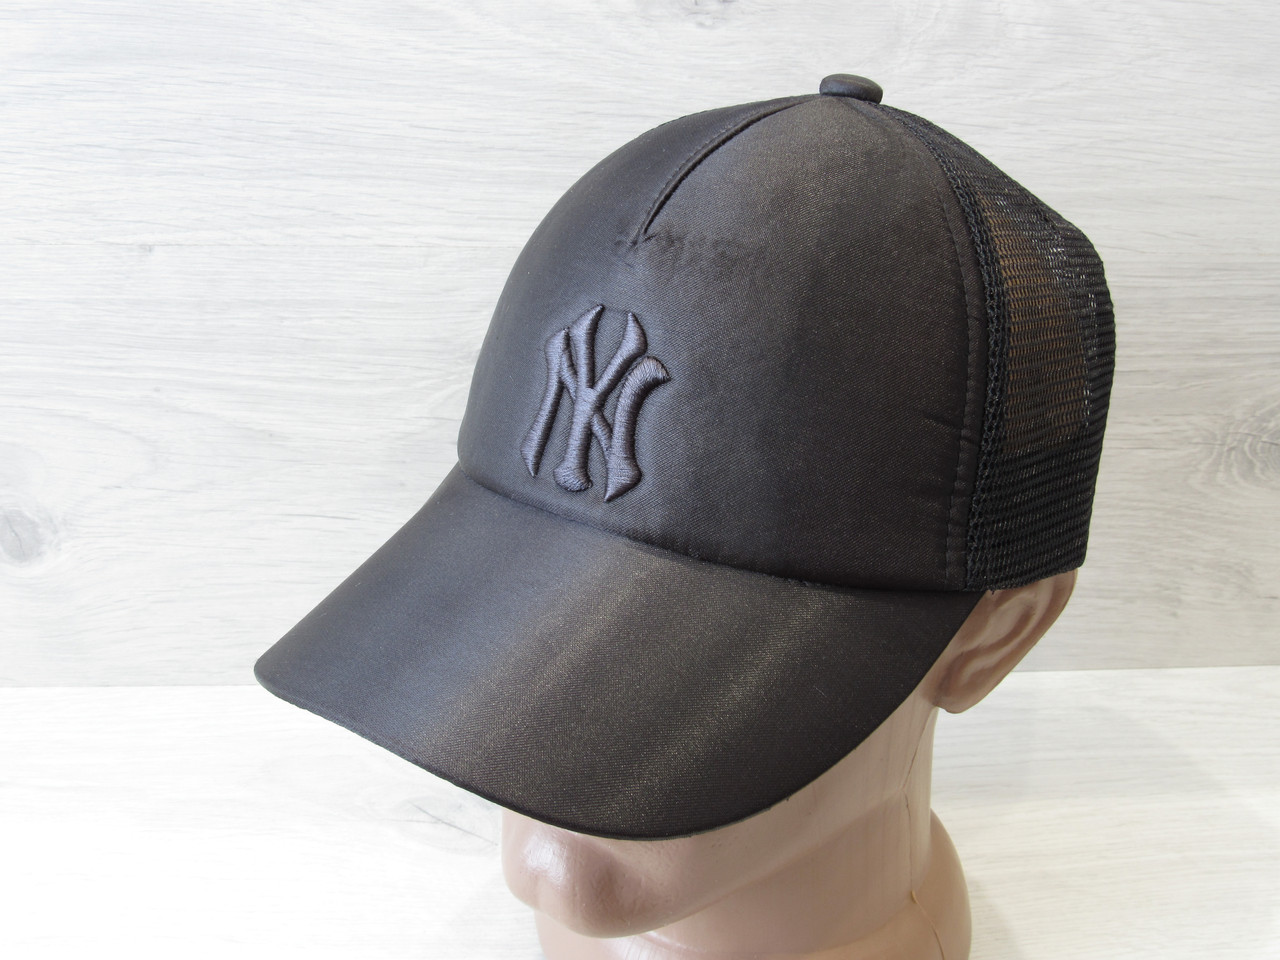 

Подростковая кепка, бейсболка, вышивка в стиле NY (реплика), коттон, сетка, размер 53-54, регулятор Черный